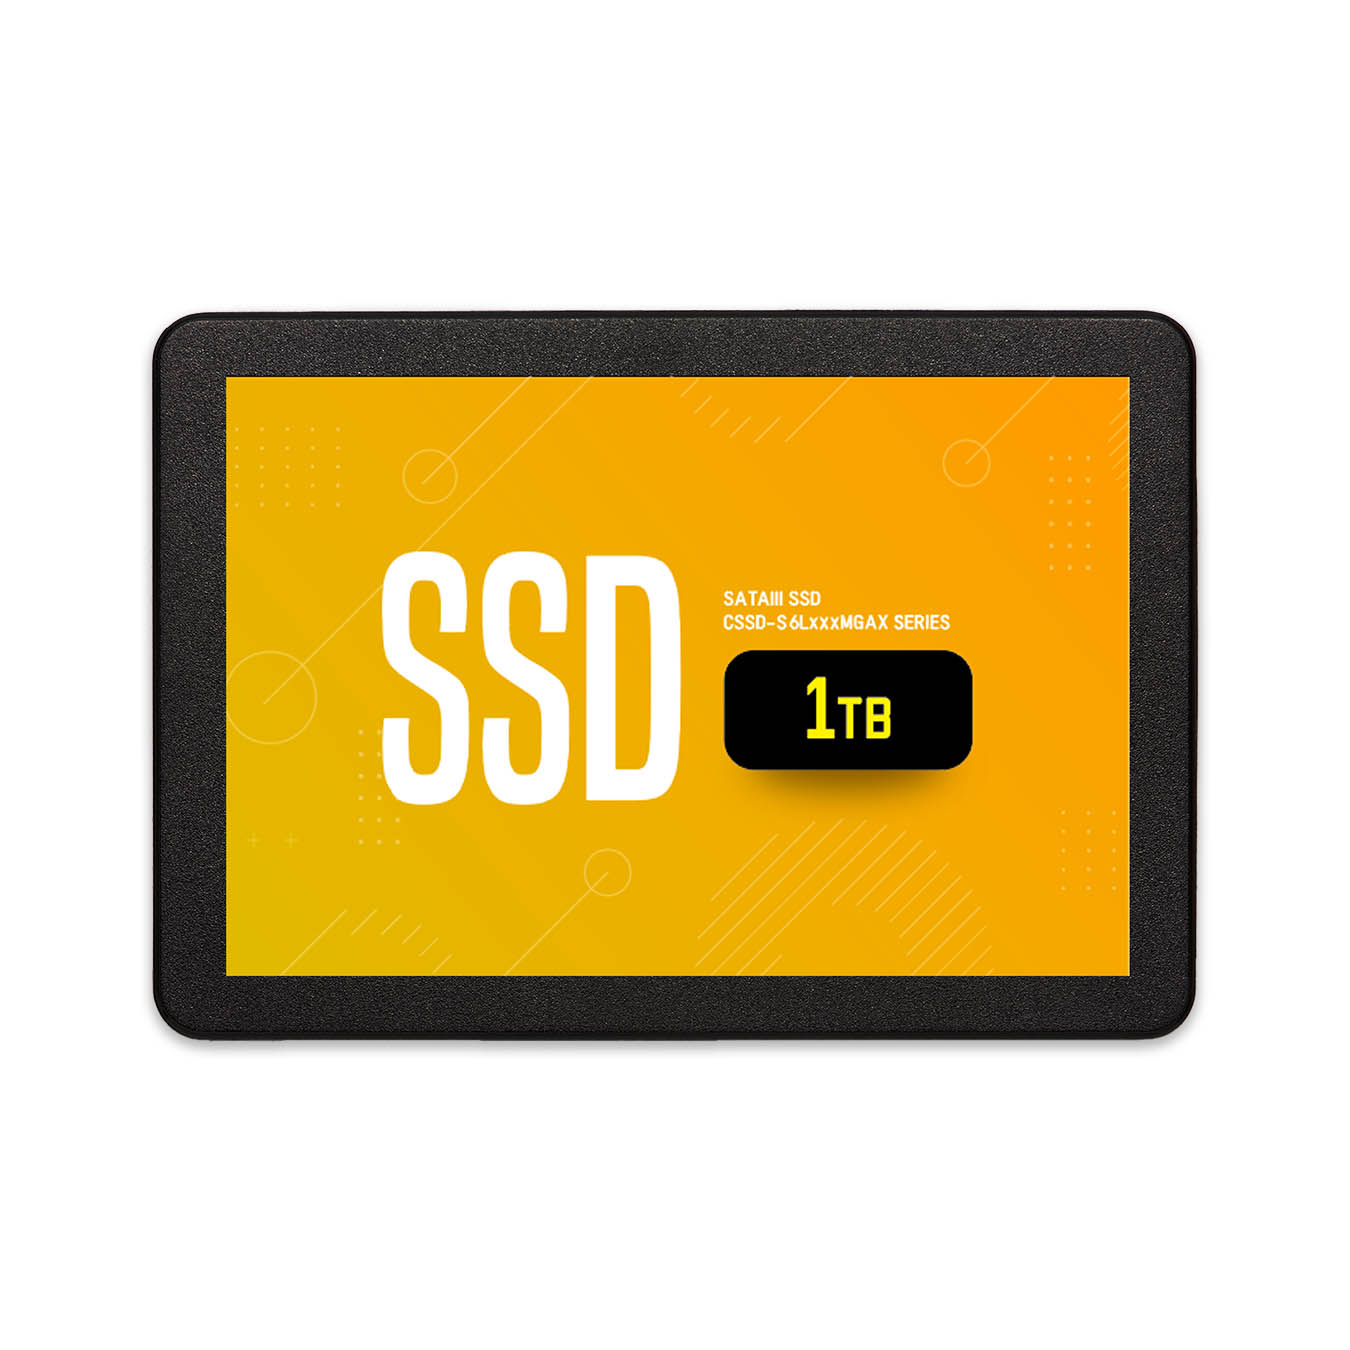 CSSD-S6L1TMGAX | CFD MGAX シリーズ SATA接続 2.5型 SSD 1TB | CFD